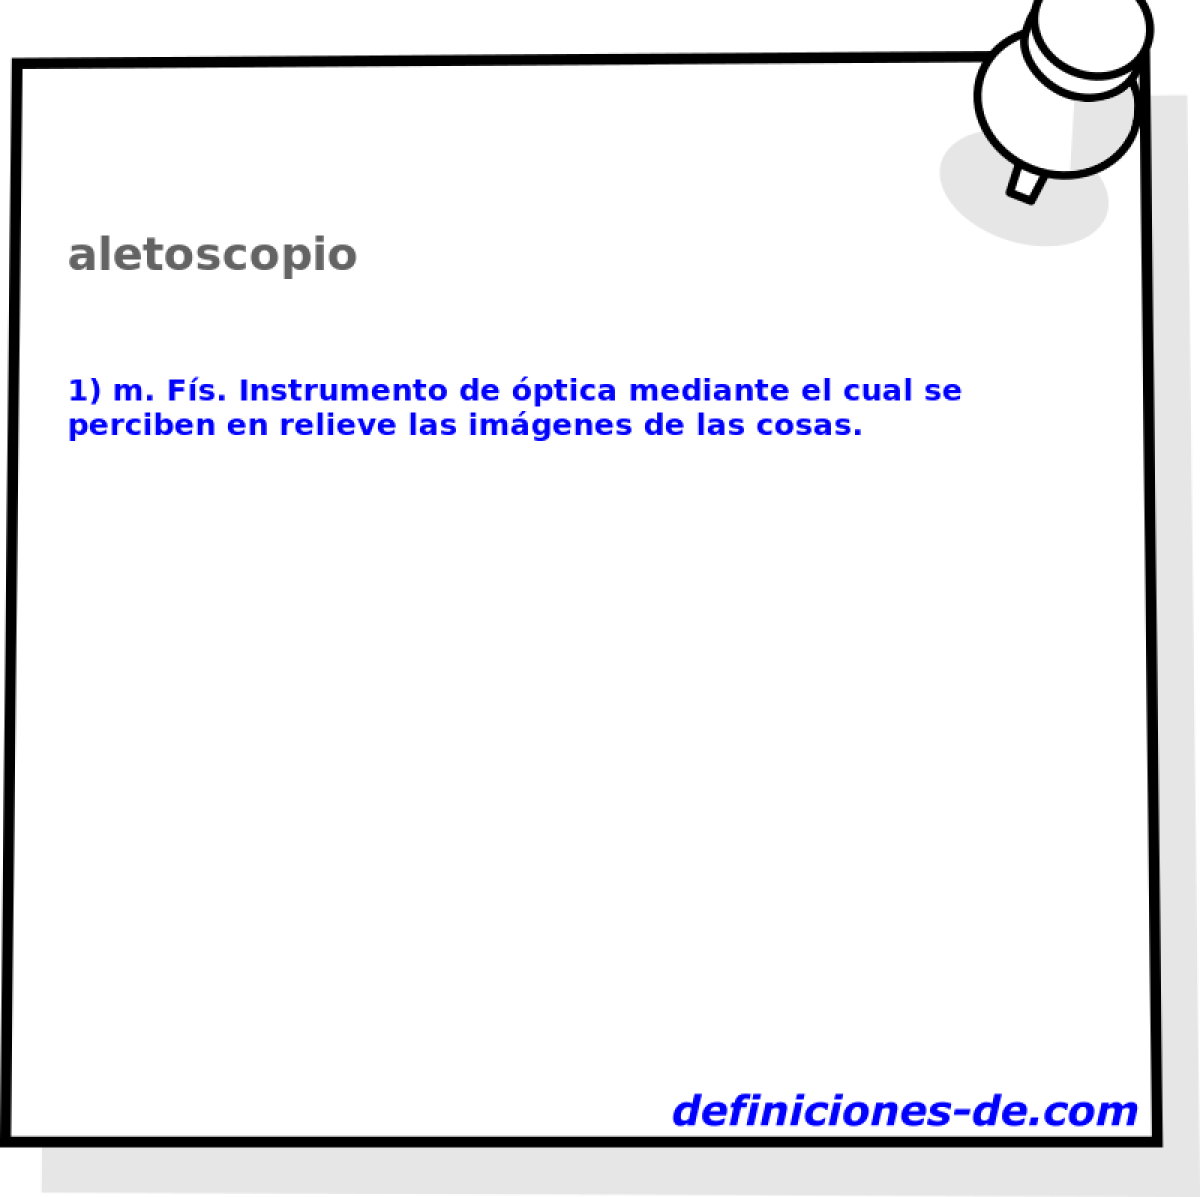 aletoscopio 